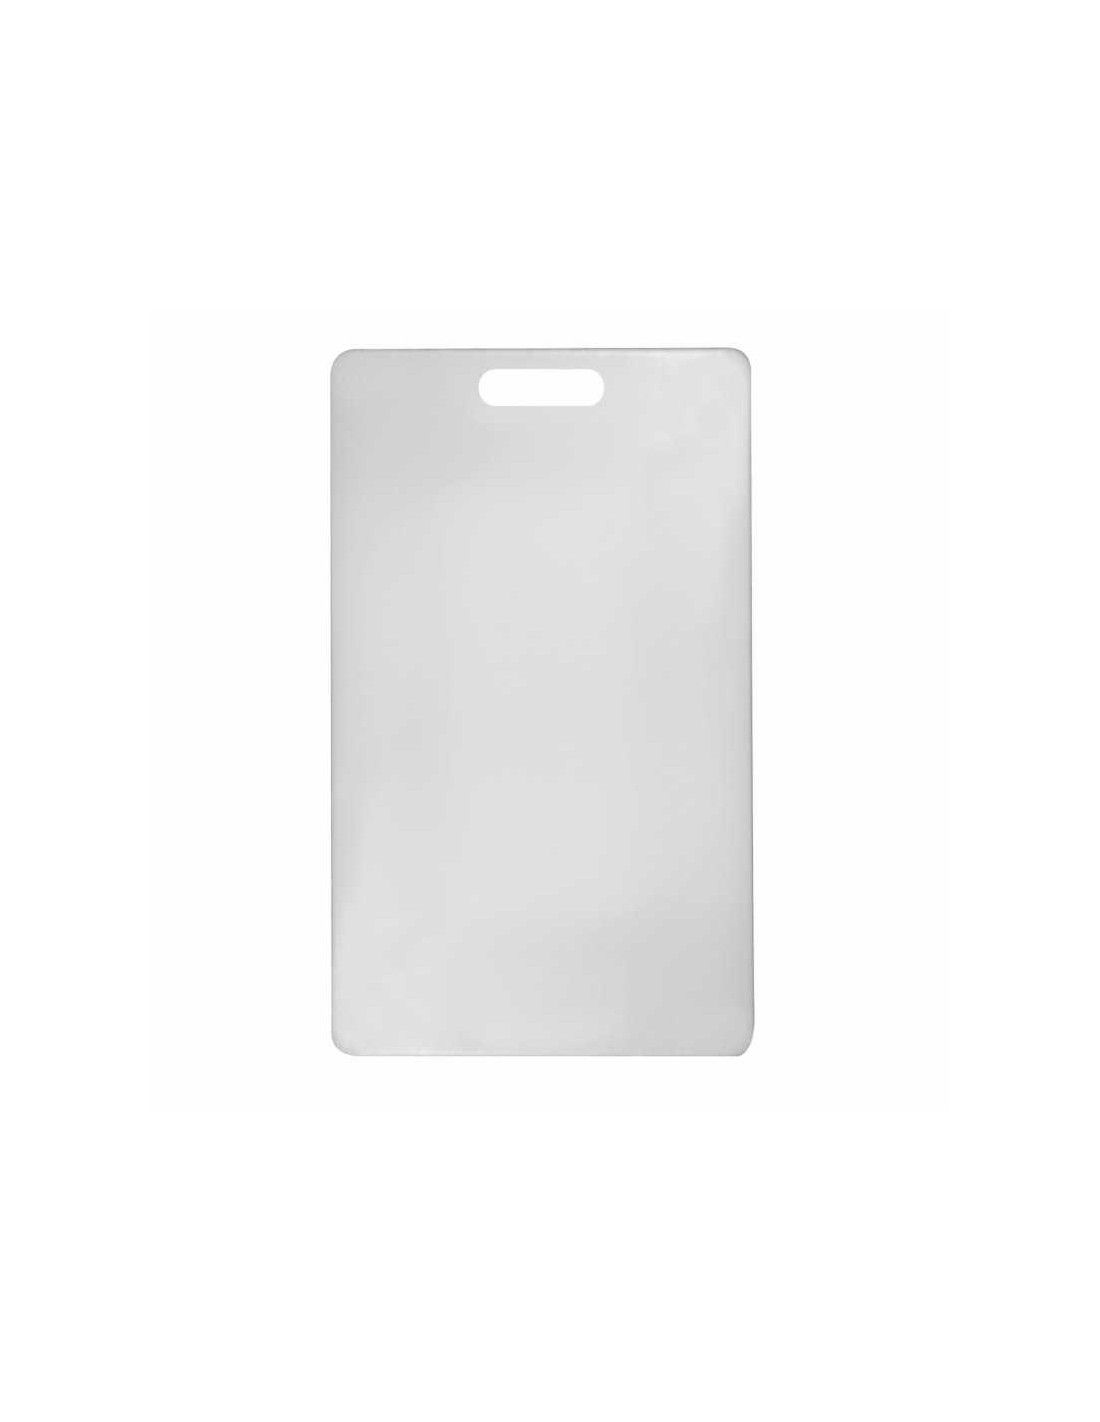 Tabla para Picar Blanca 15.2 x 25.4 cm Winco • BPU · HoReCa • BPU · HoReCa